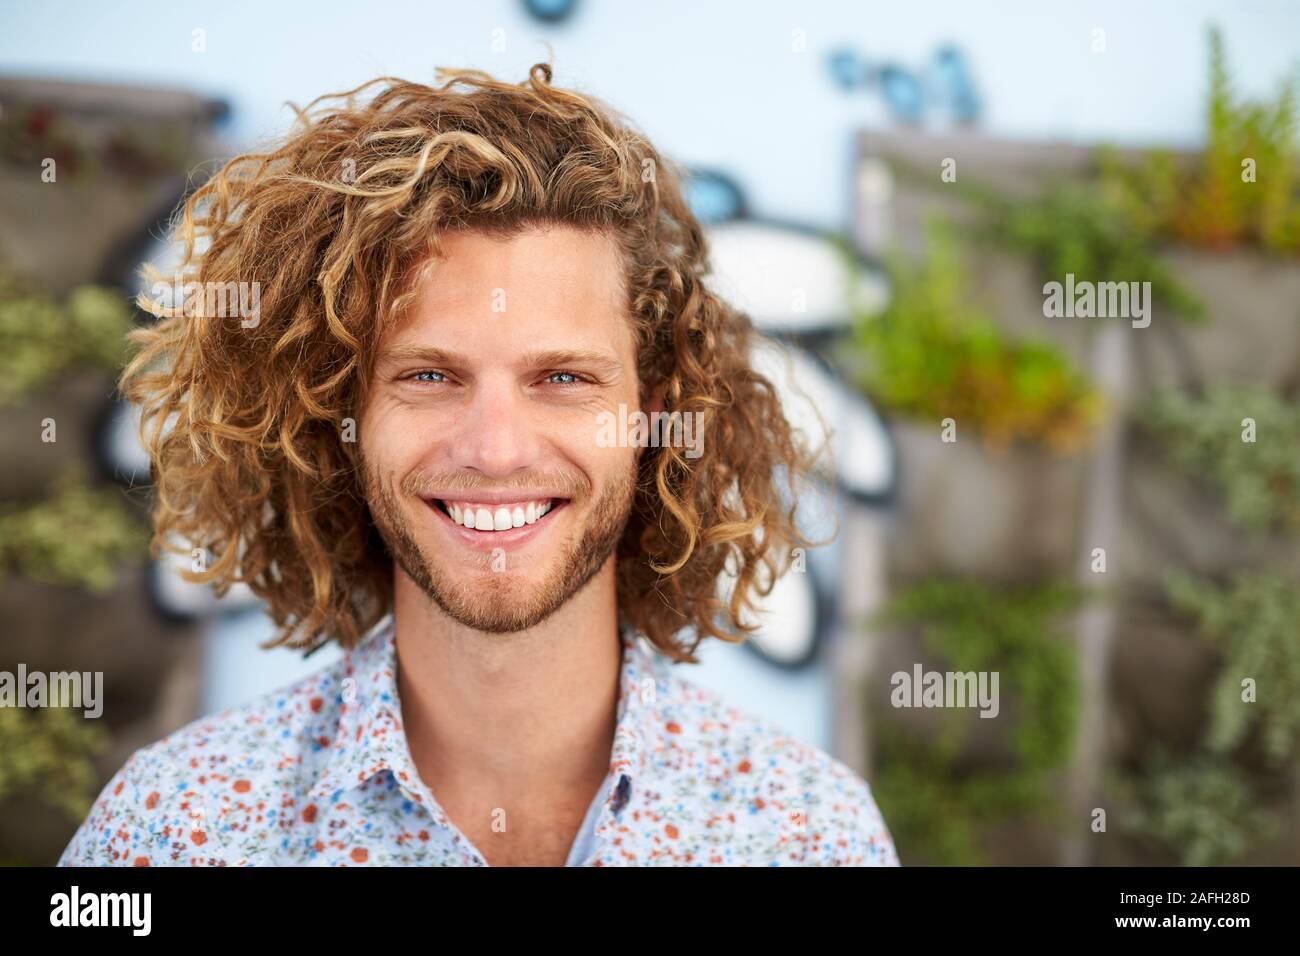 La tête et les épaules de plein air Portrait Of Smiling Young Man Banque D'Images